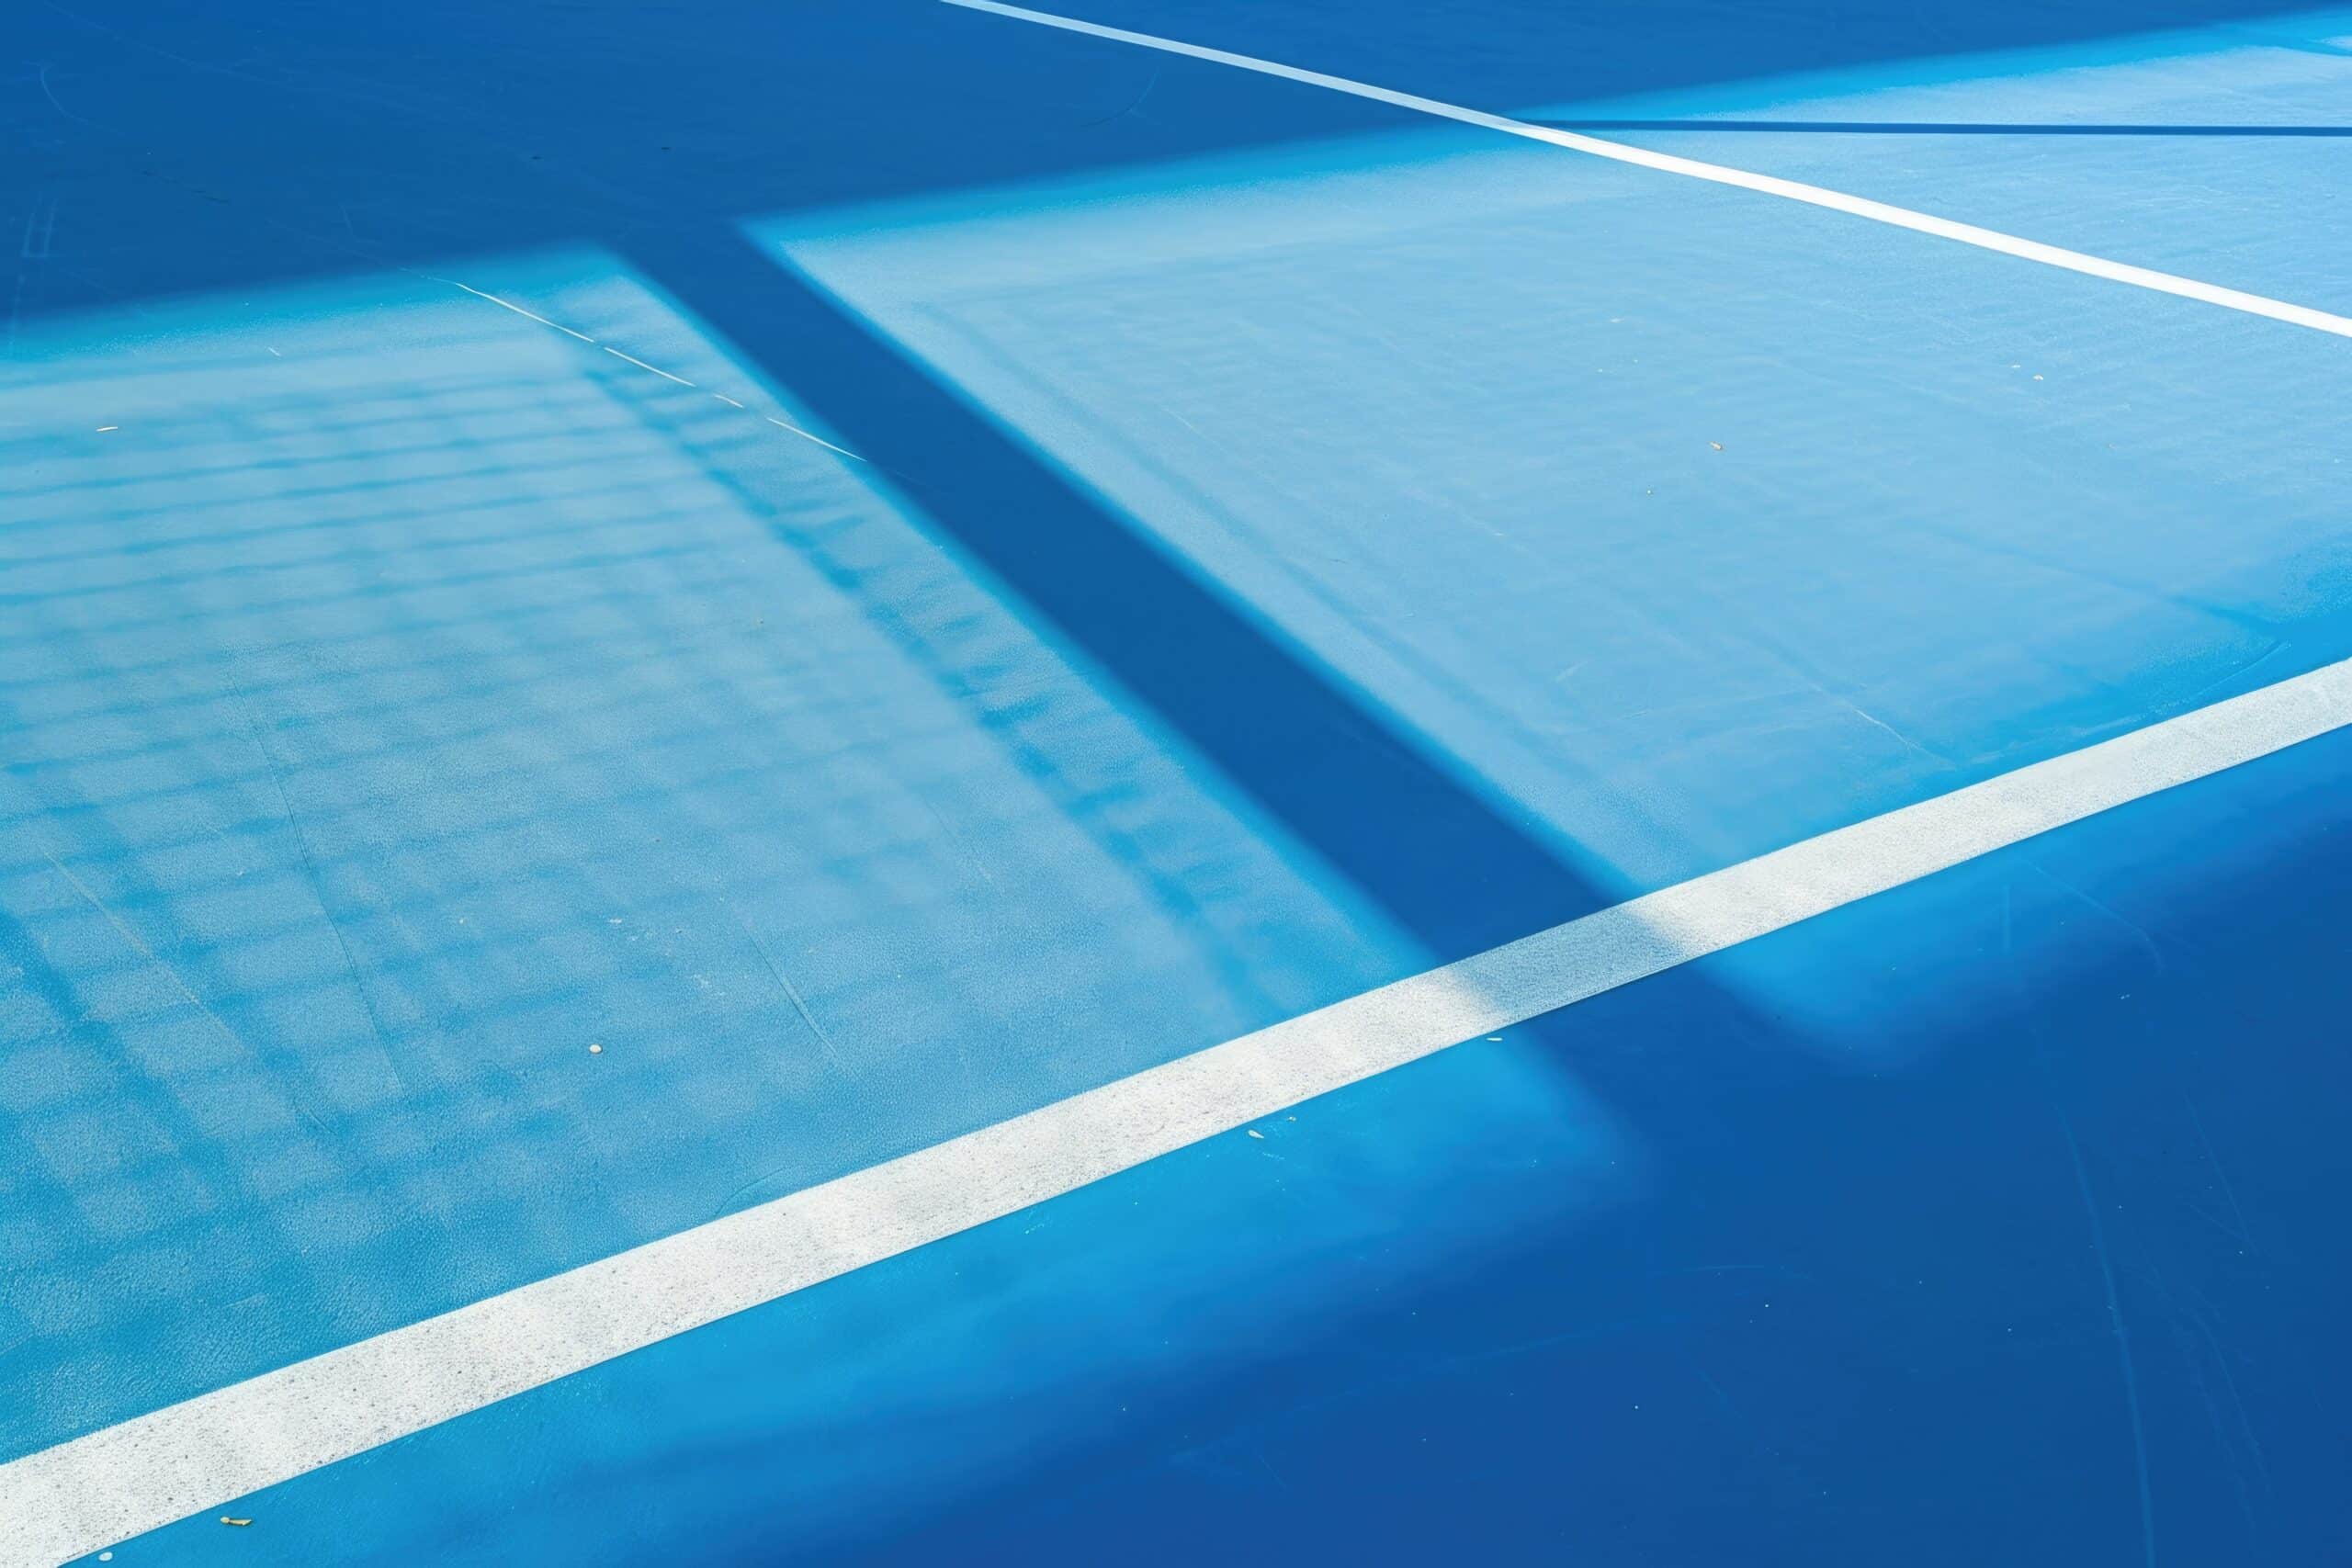 www.appr.com : How do you light an outdoor badminton court?